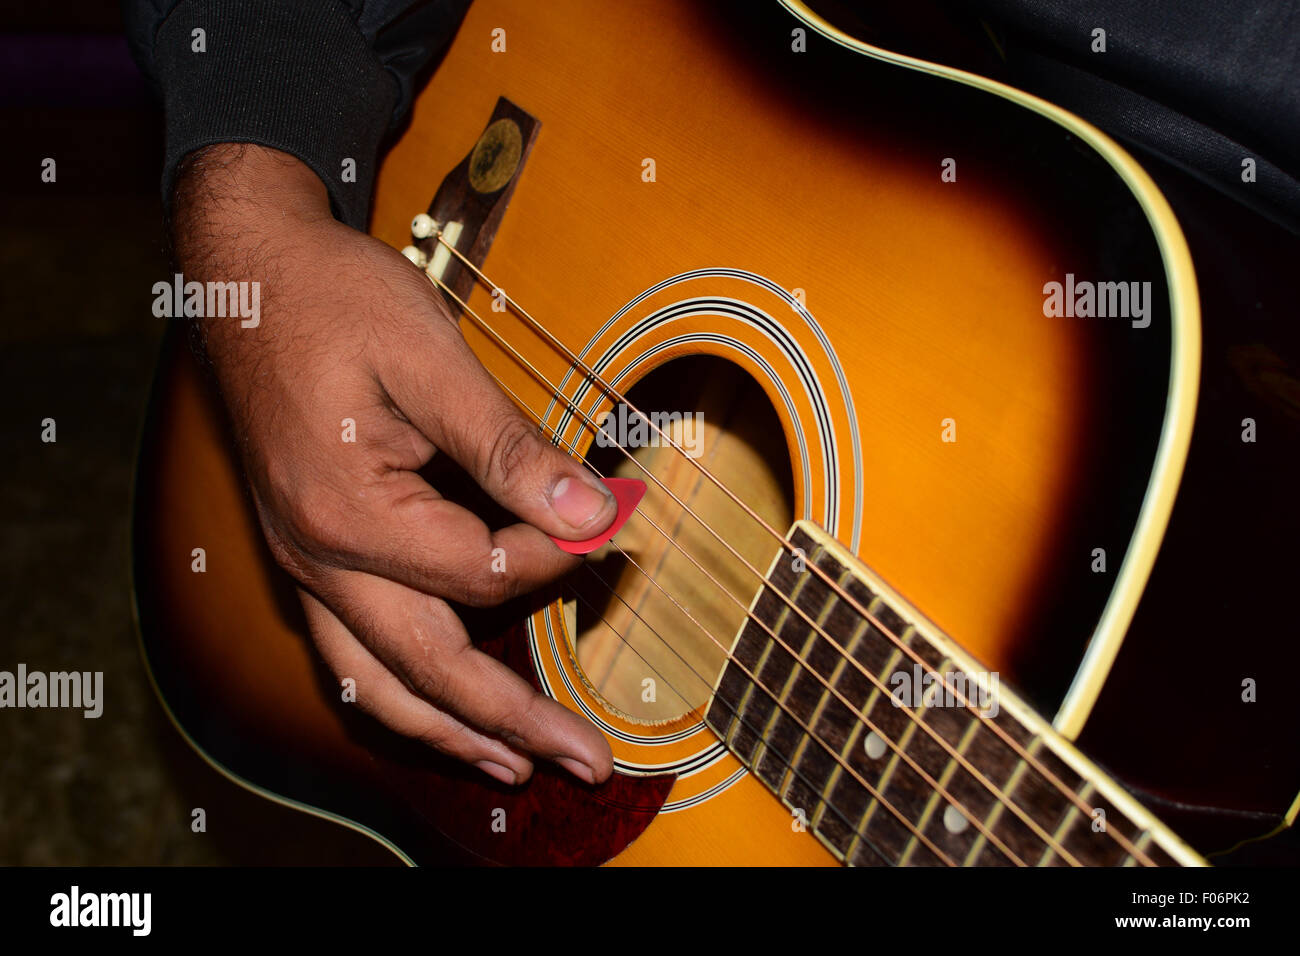 Guitarist playing guitar music guitar player hand closeup Stock Photo